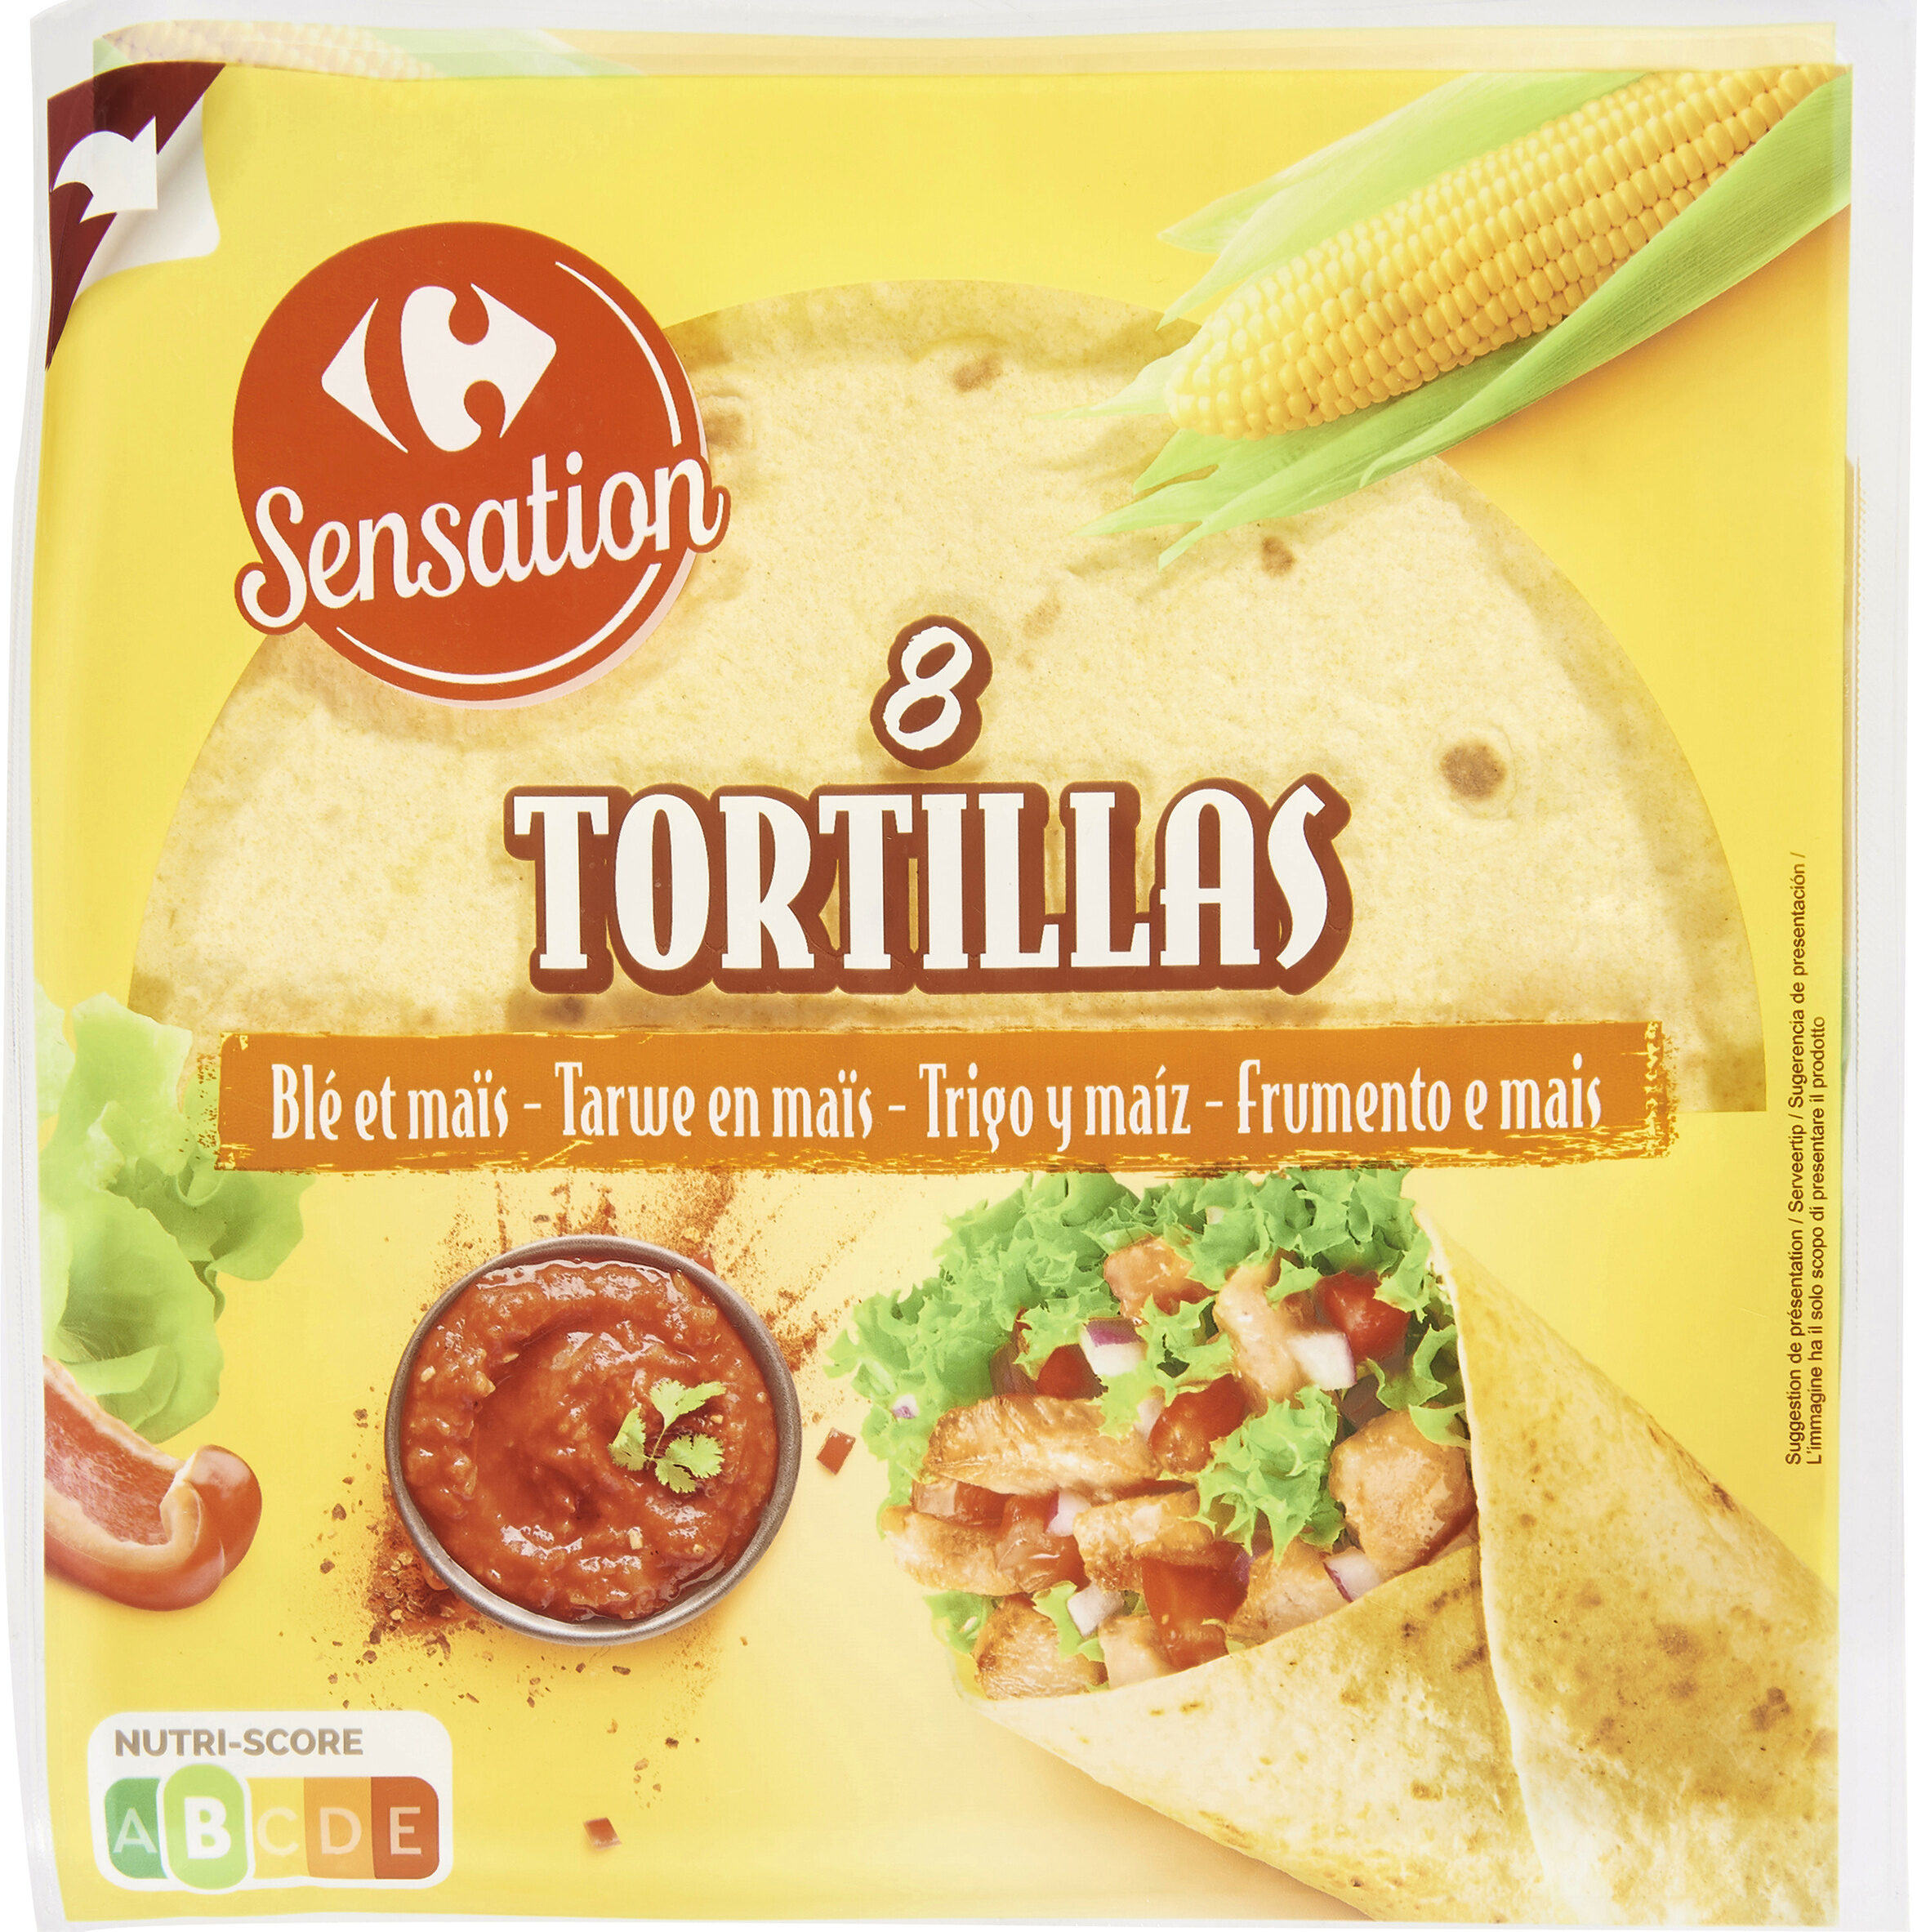 8 tortillas - Product - fr